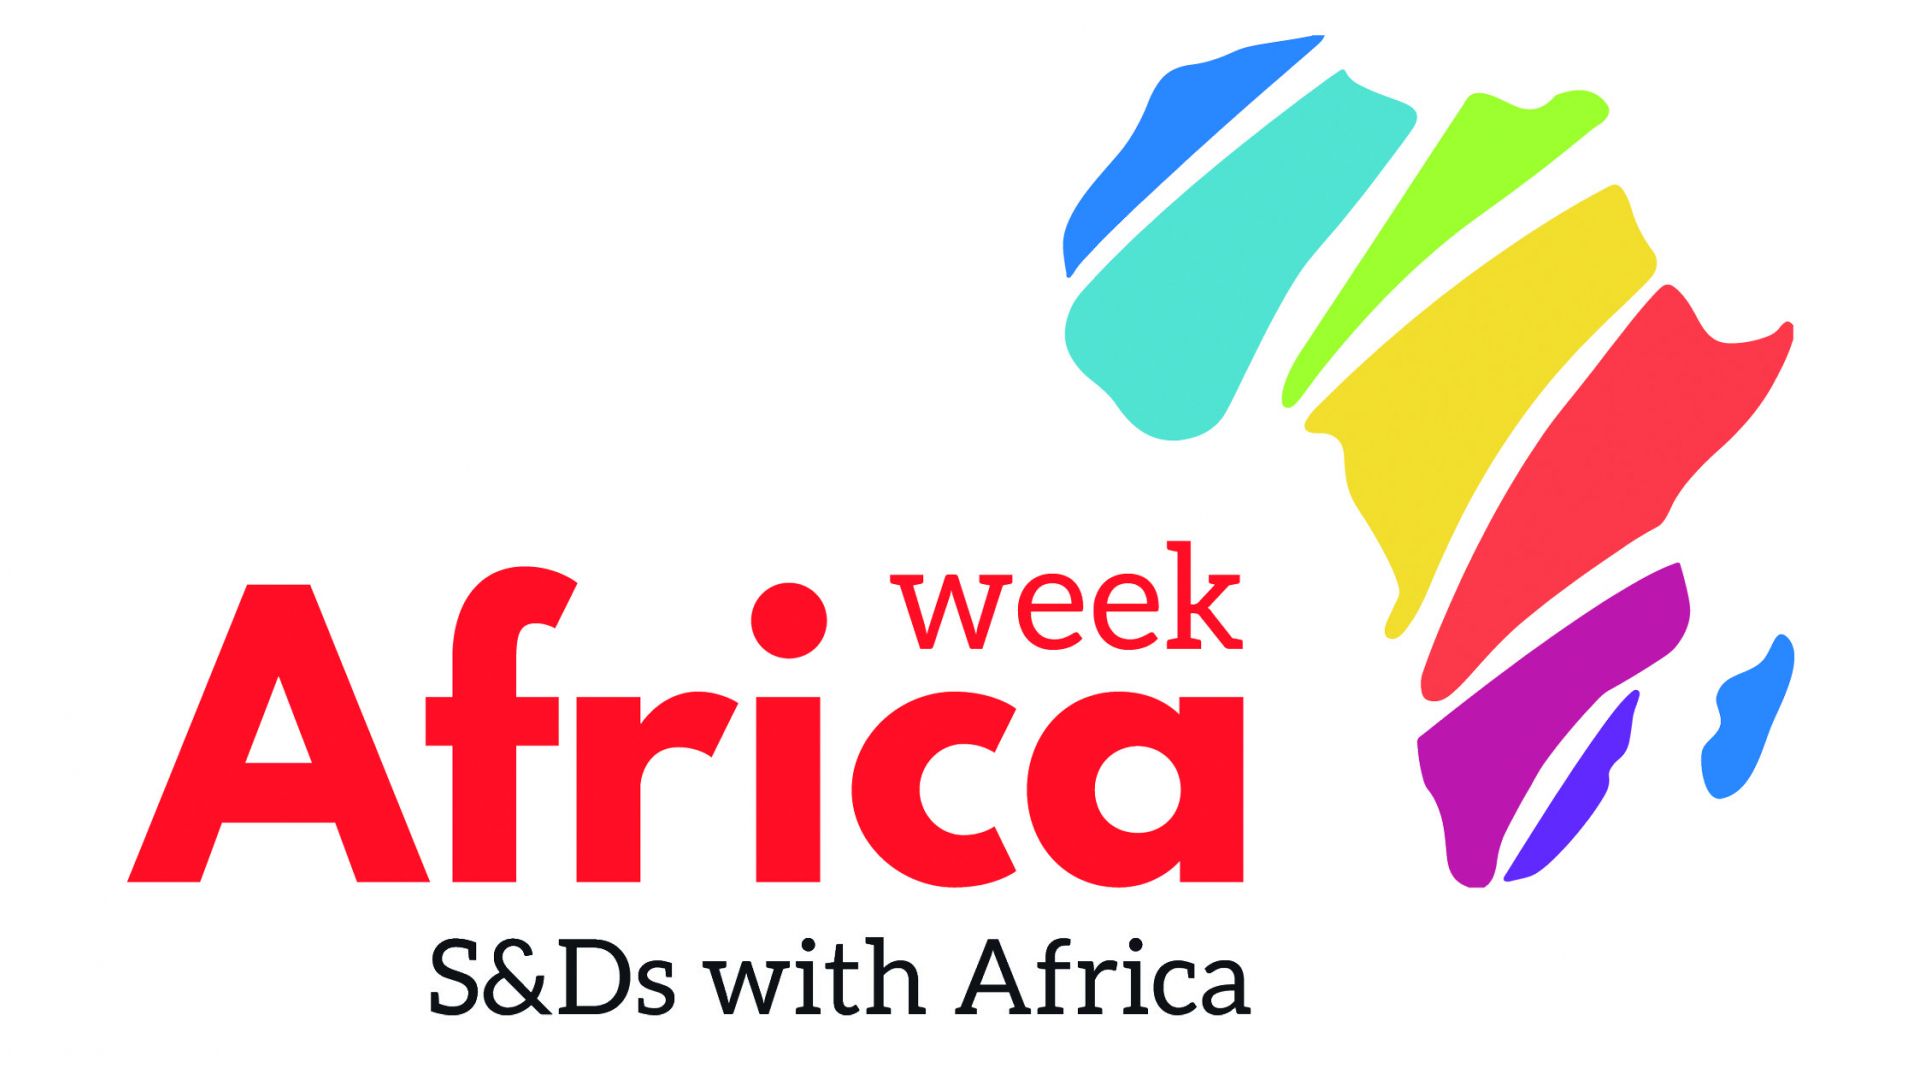 Africa week 2020